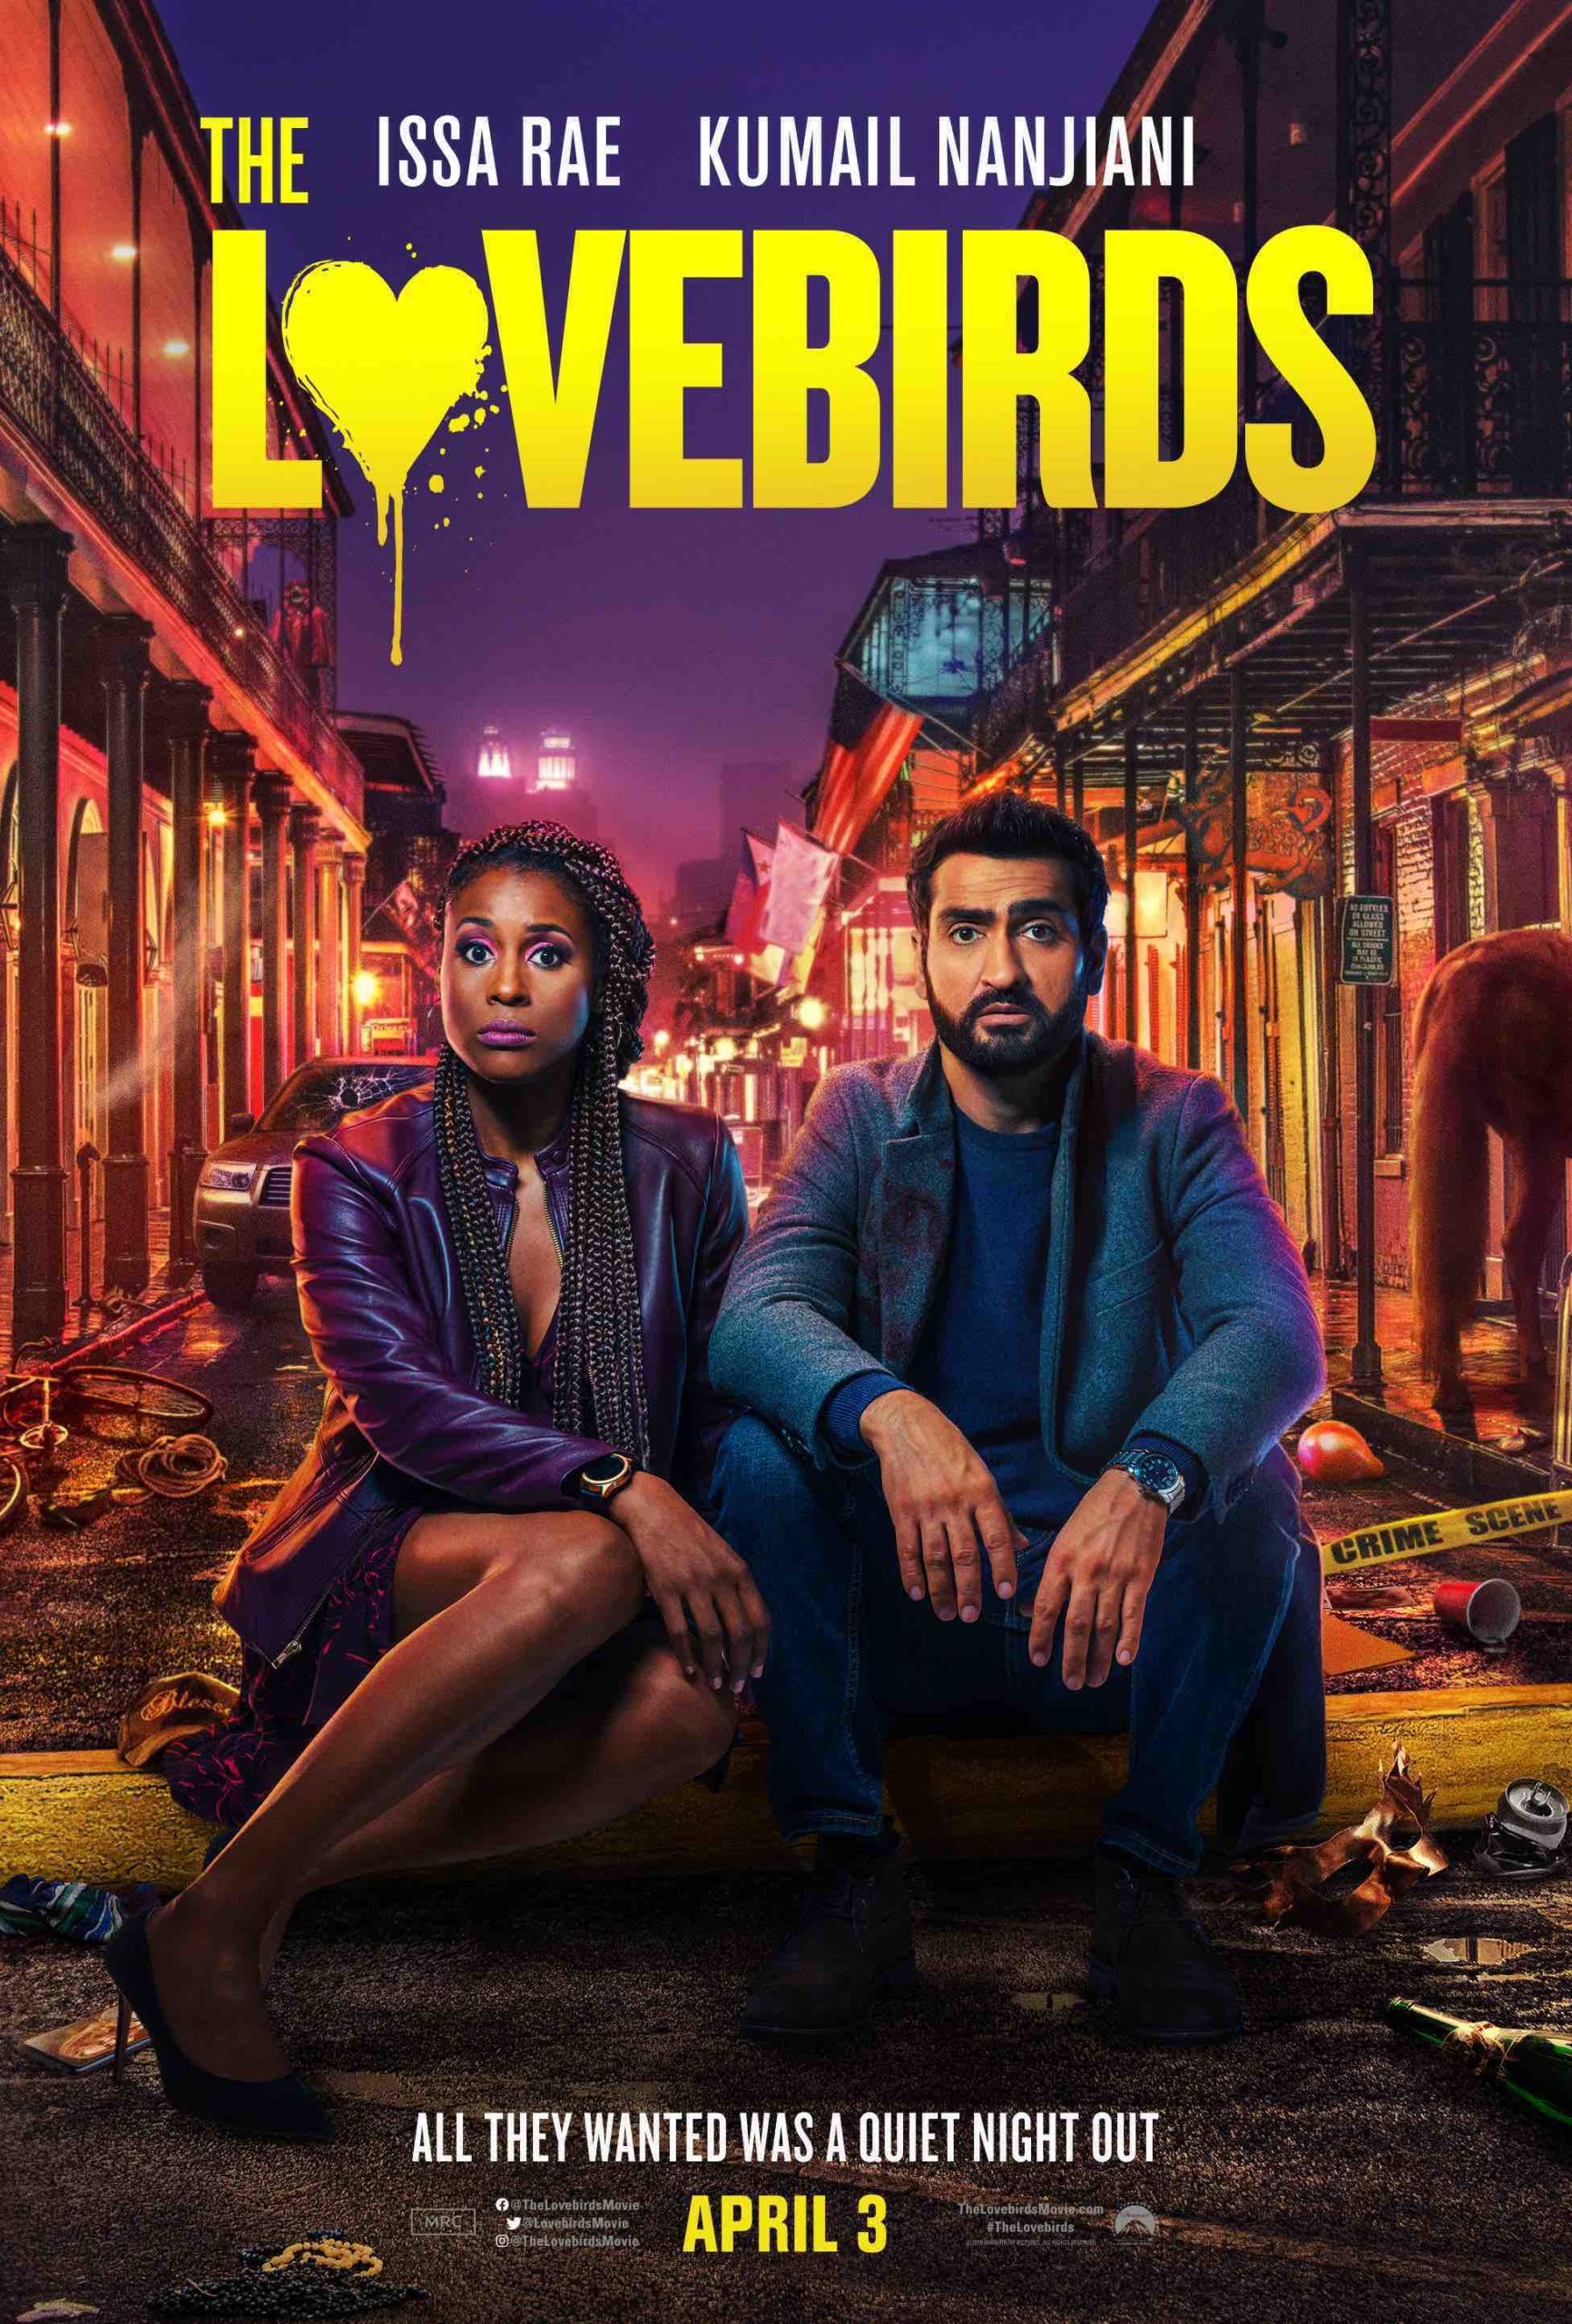 ดูหนังออนไลน์ฟรี THE LOVEBIRDS 2020 เดอะ เลิฟเบิร์ดส์ [ซับไทย]